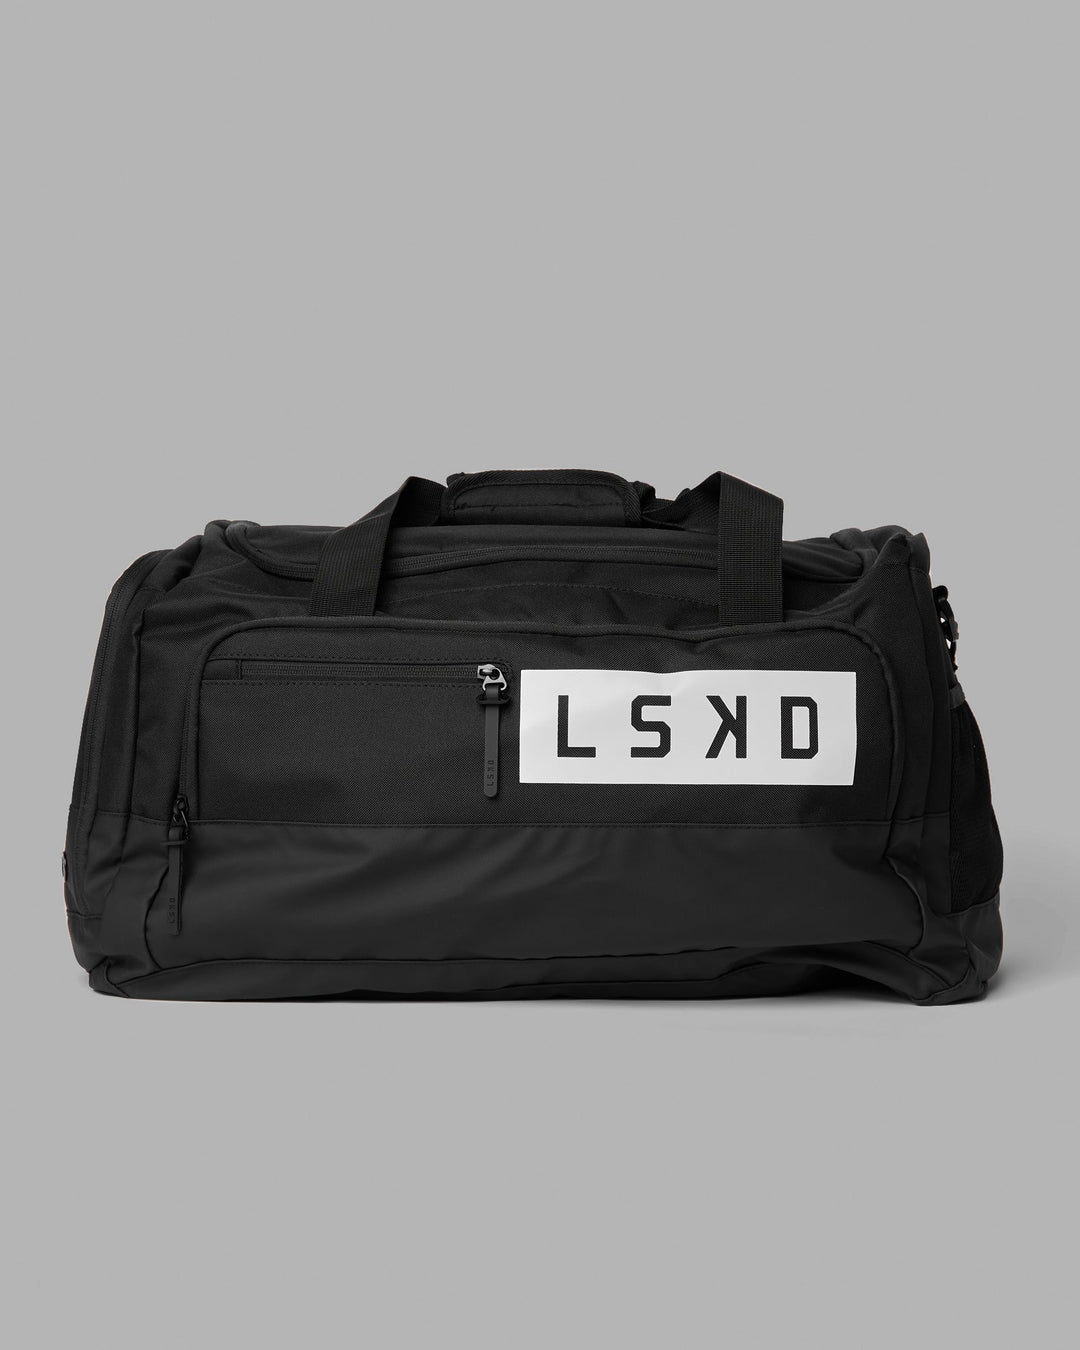 Rep Duffle Bag 50L - Black